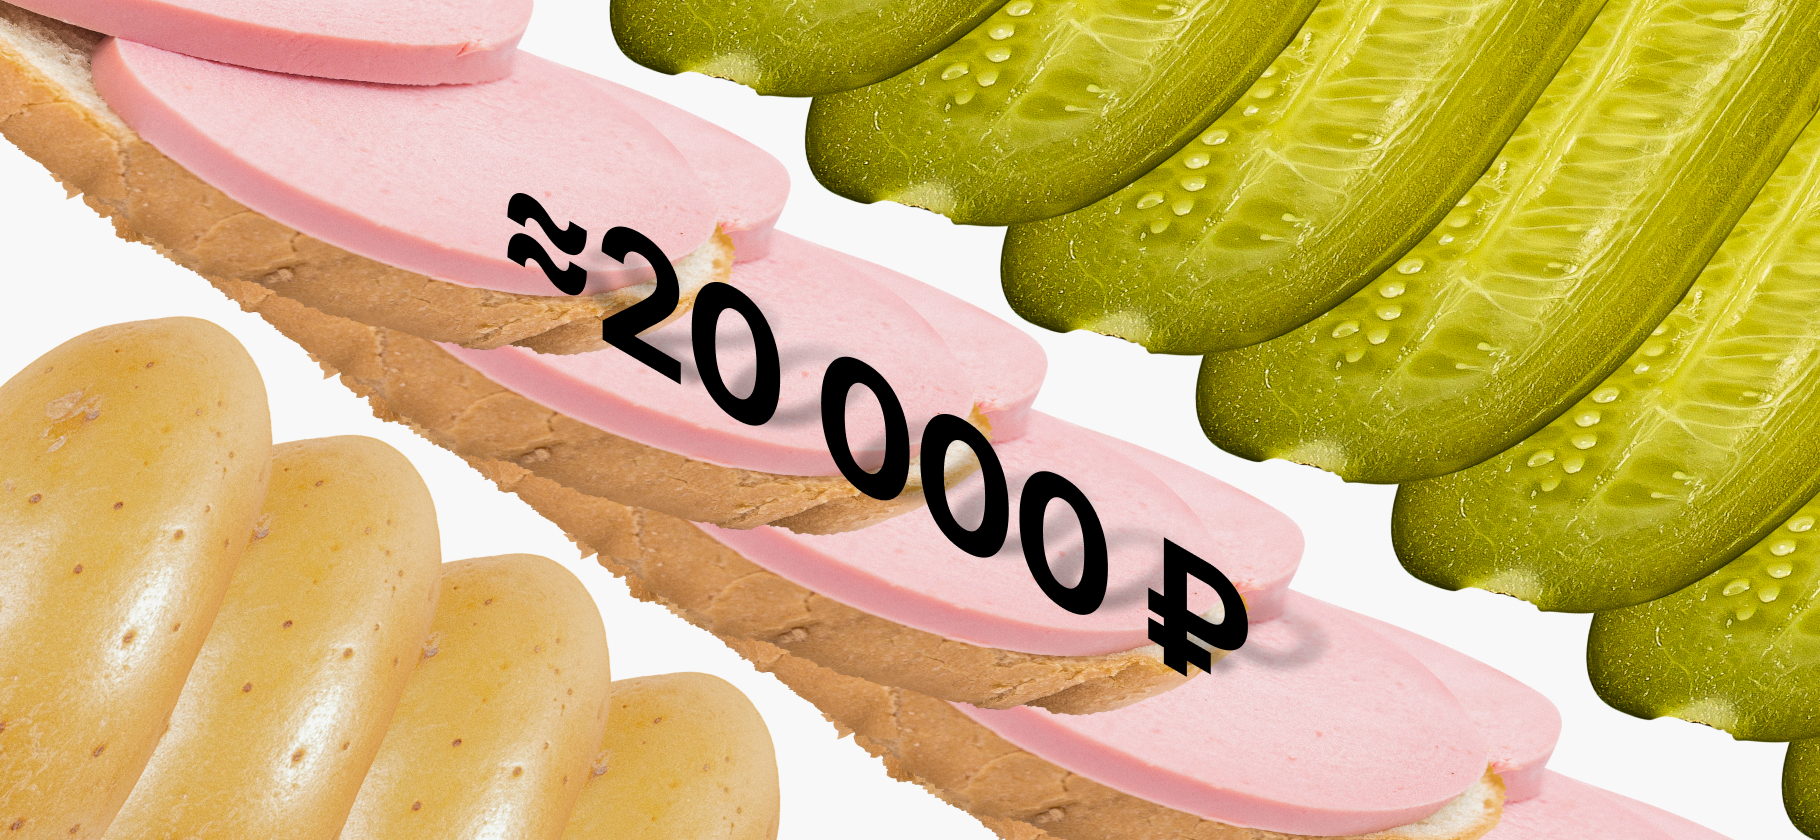 «Откровенно дешевые продукты не покупаем»: мы тратим на еду около 20 000 ₽ в месяц на троих